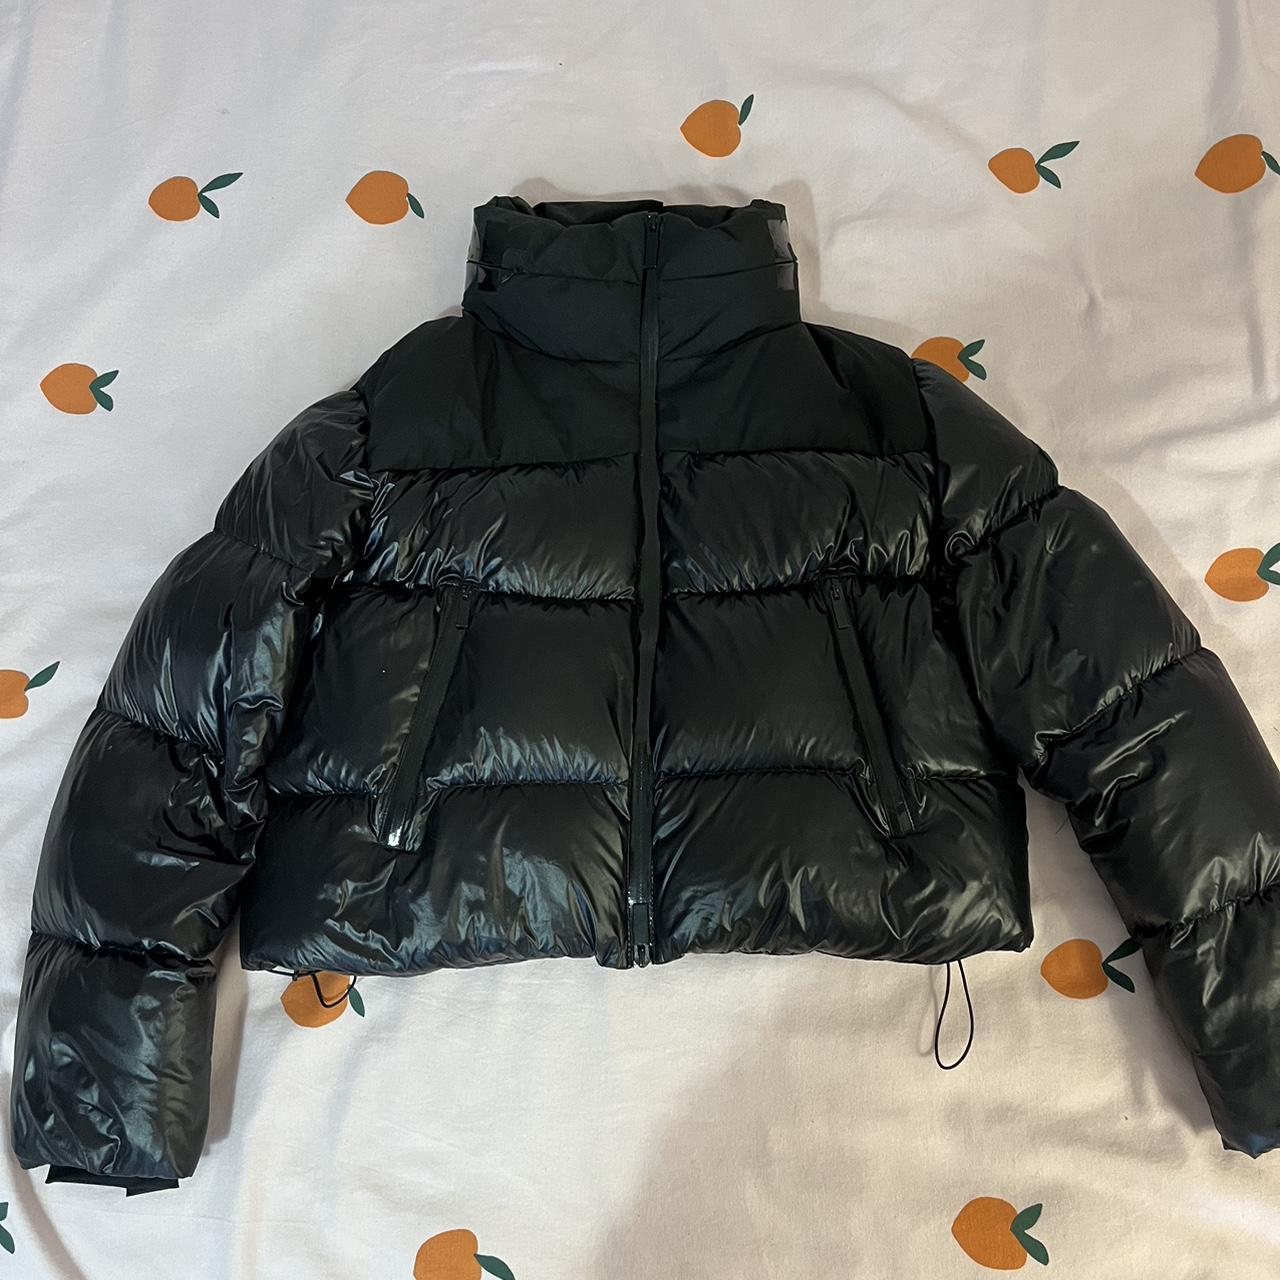 Moncler black cropped puffer coat jacket Size 0 fits... - Depop